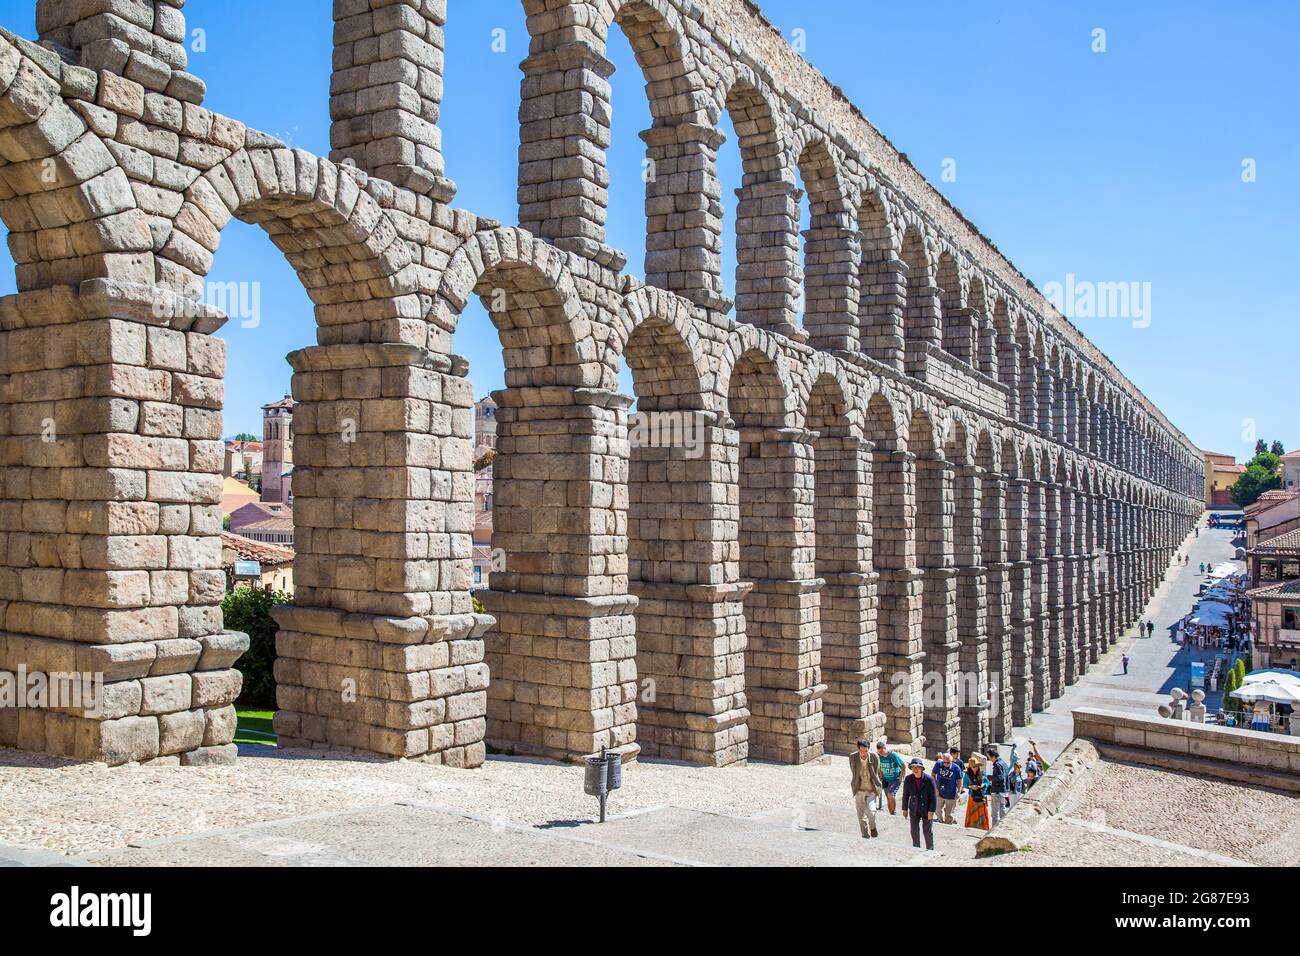 Ségovie, Espagne - 21 septembre 2015 : aqueduc romain antique à Ségovie et touristes à pied Banque D'Images